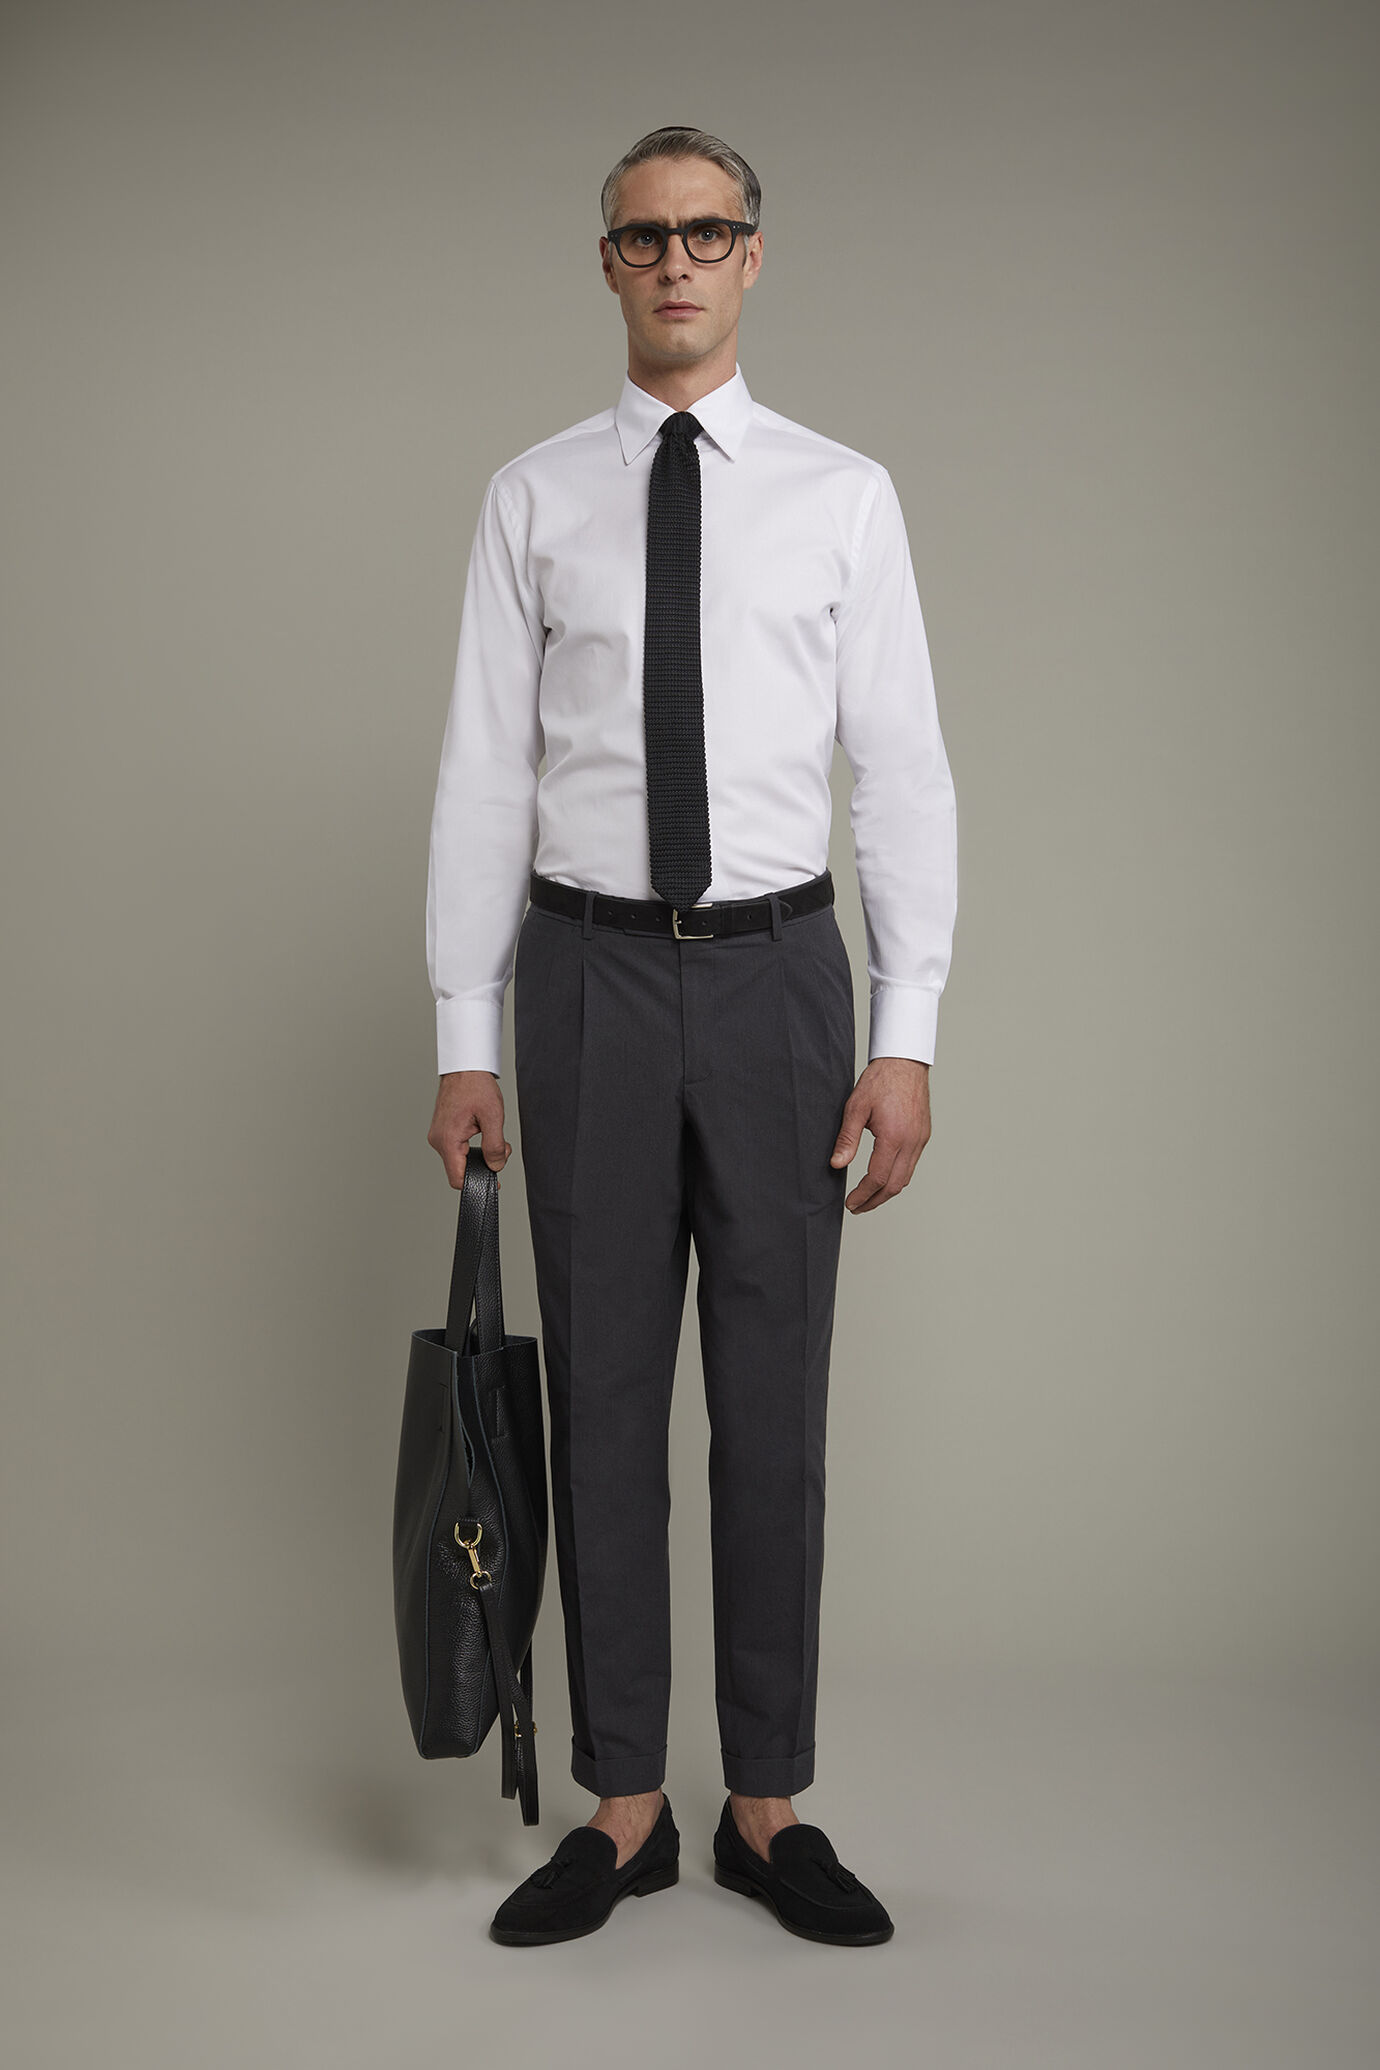 Pantalone classico uomo con doppia pince tessuto con effetto fiammato regular fit